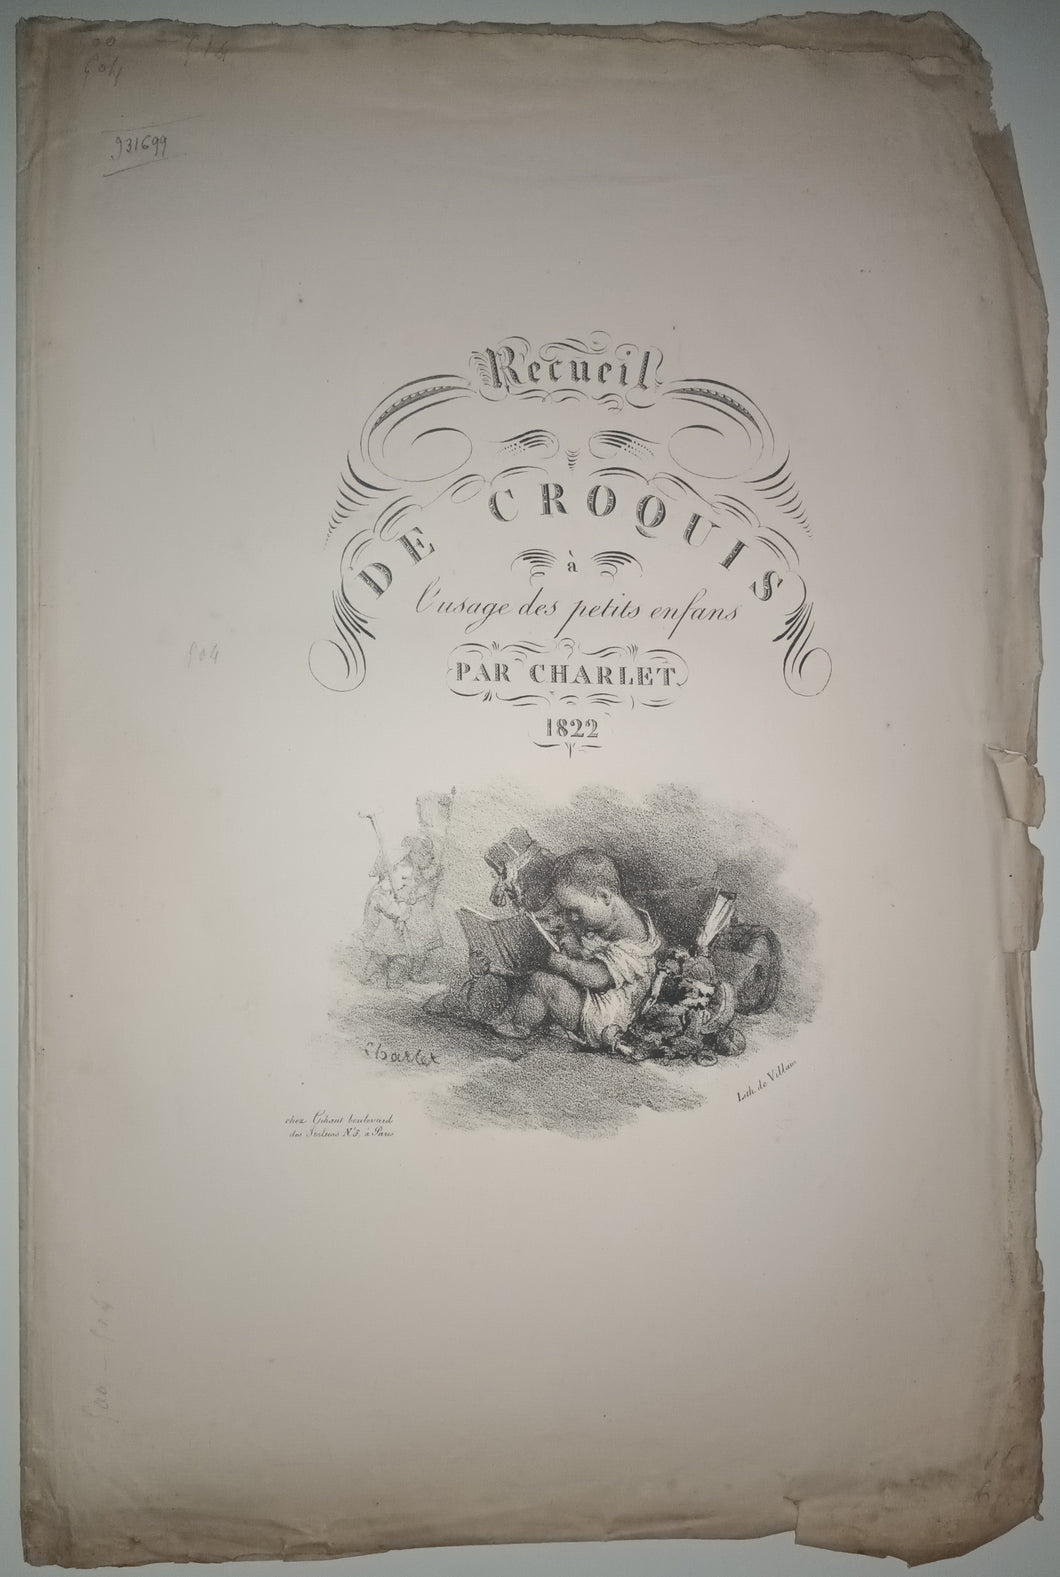 Recueil de Croquis à l'usage des petits enfans [sic]. Paris, Gihaut Frères, 1822.